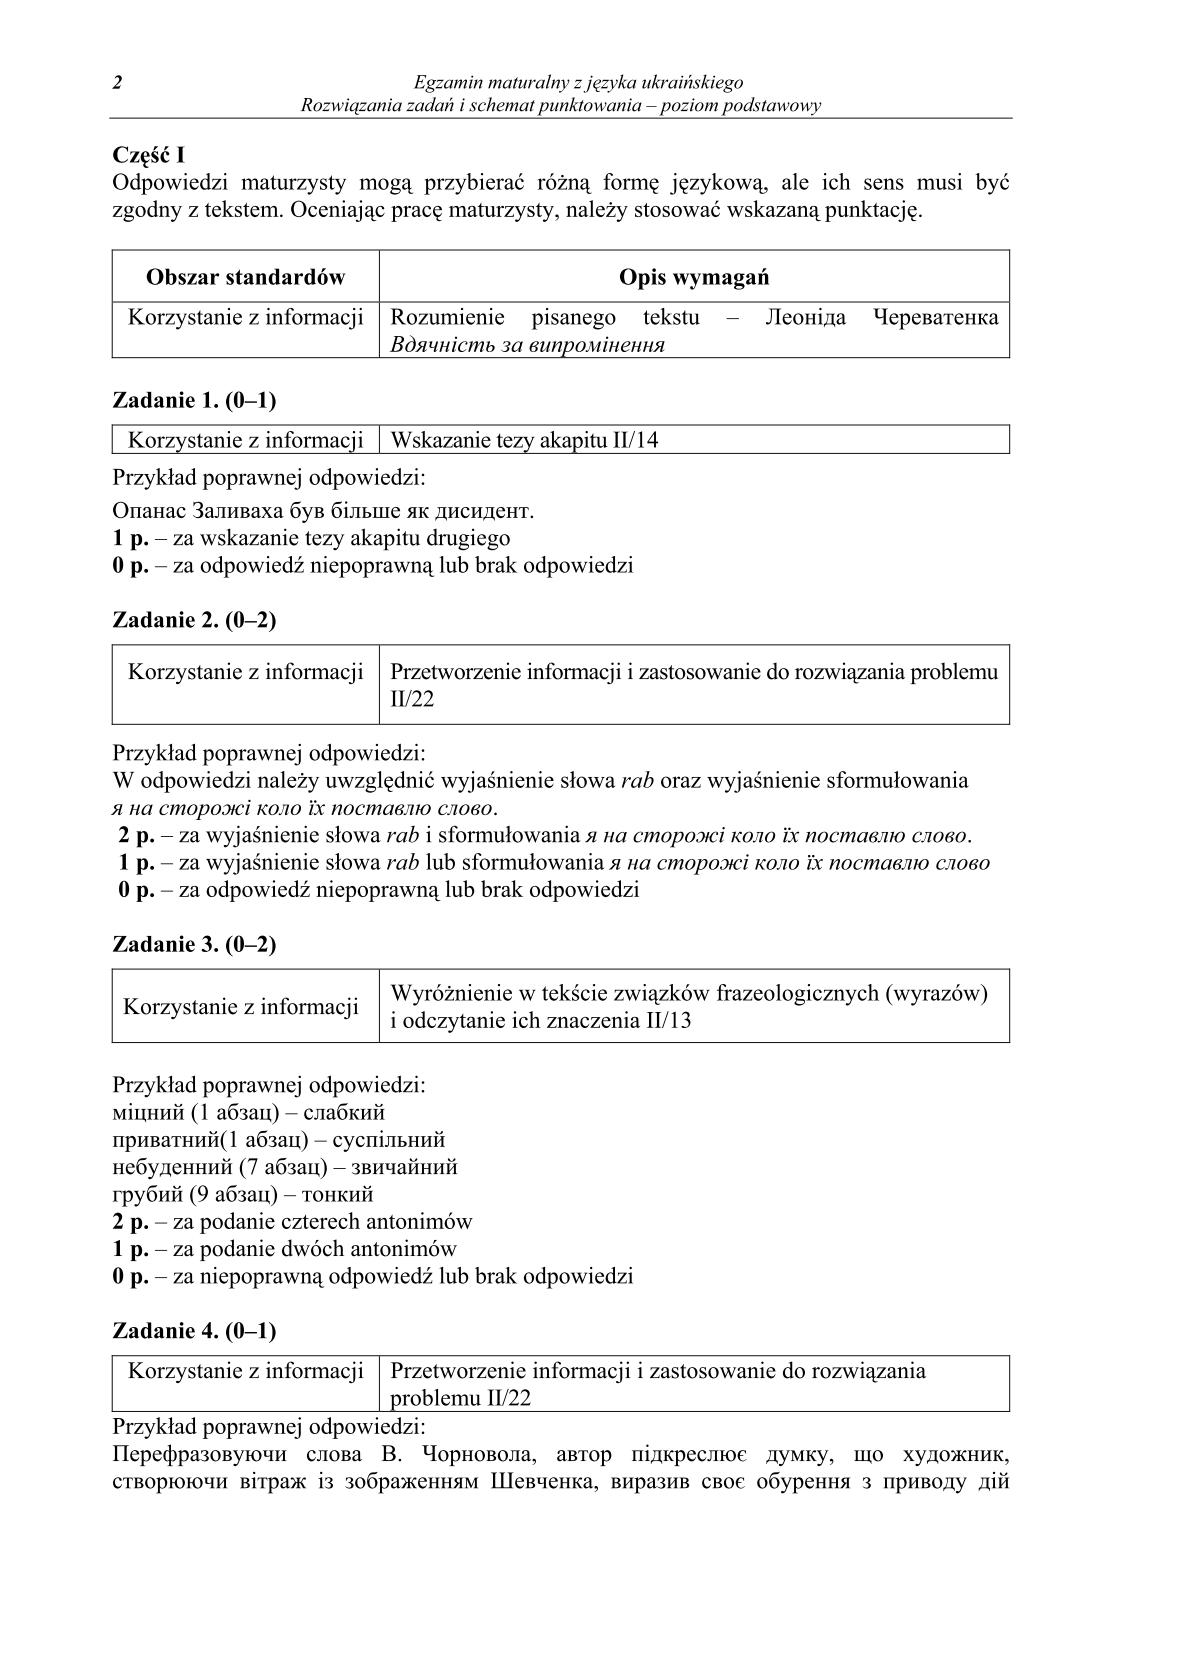 odpowiedzi-jezyk-ukrainski-poziom-podstawowy-matura-2014-str.2